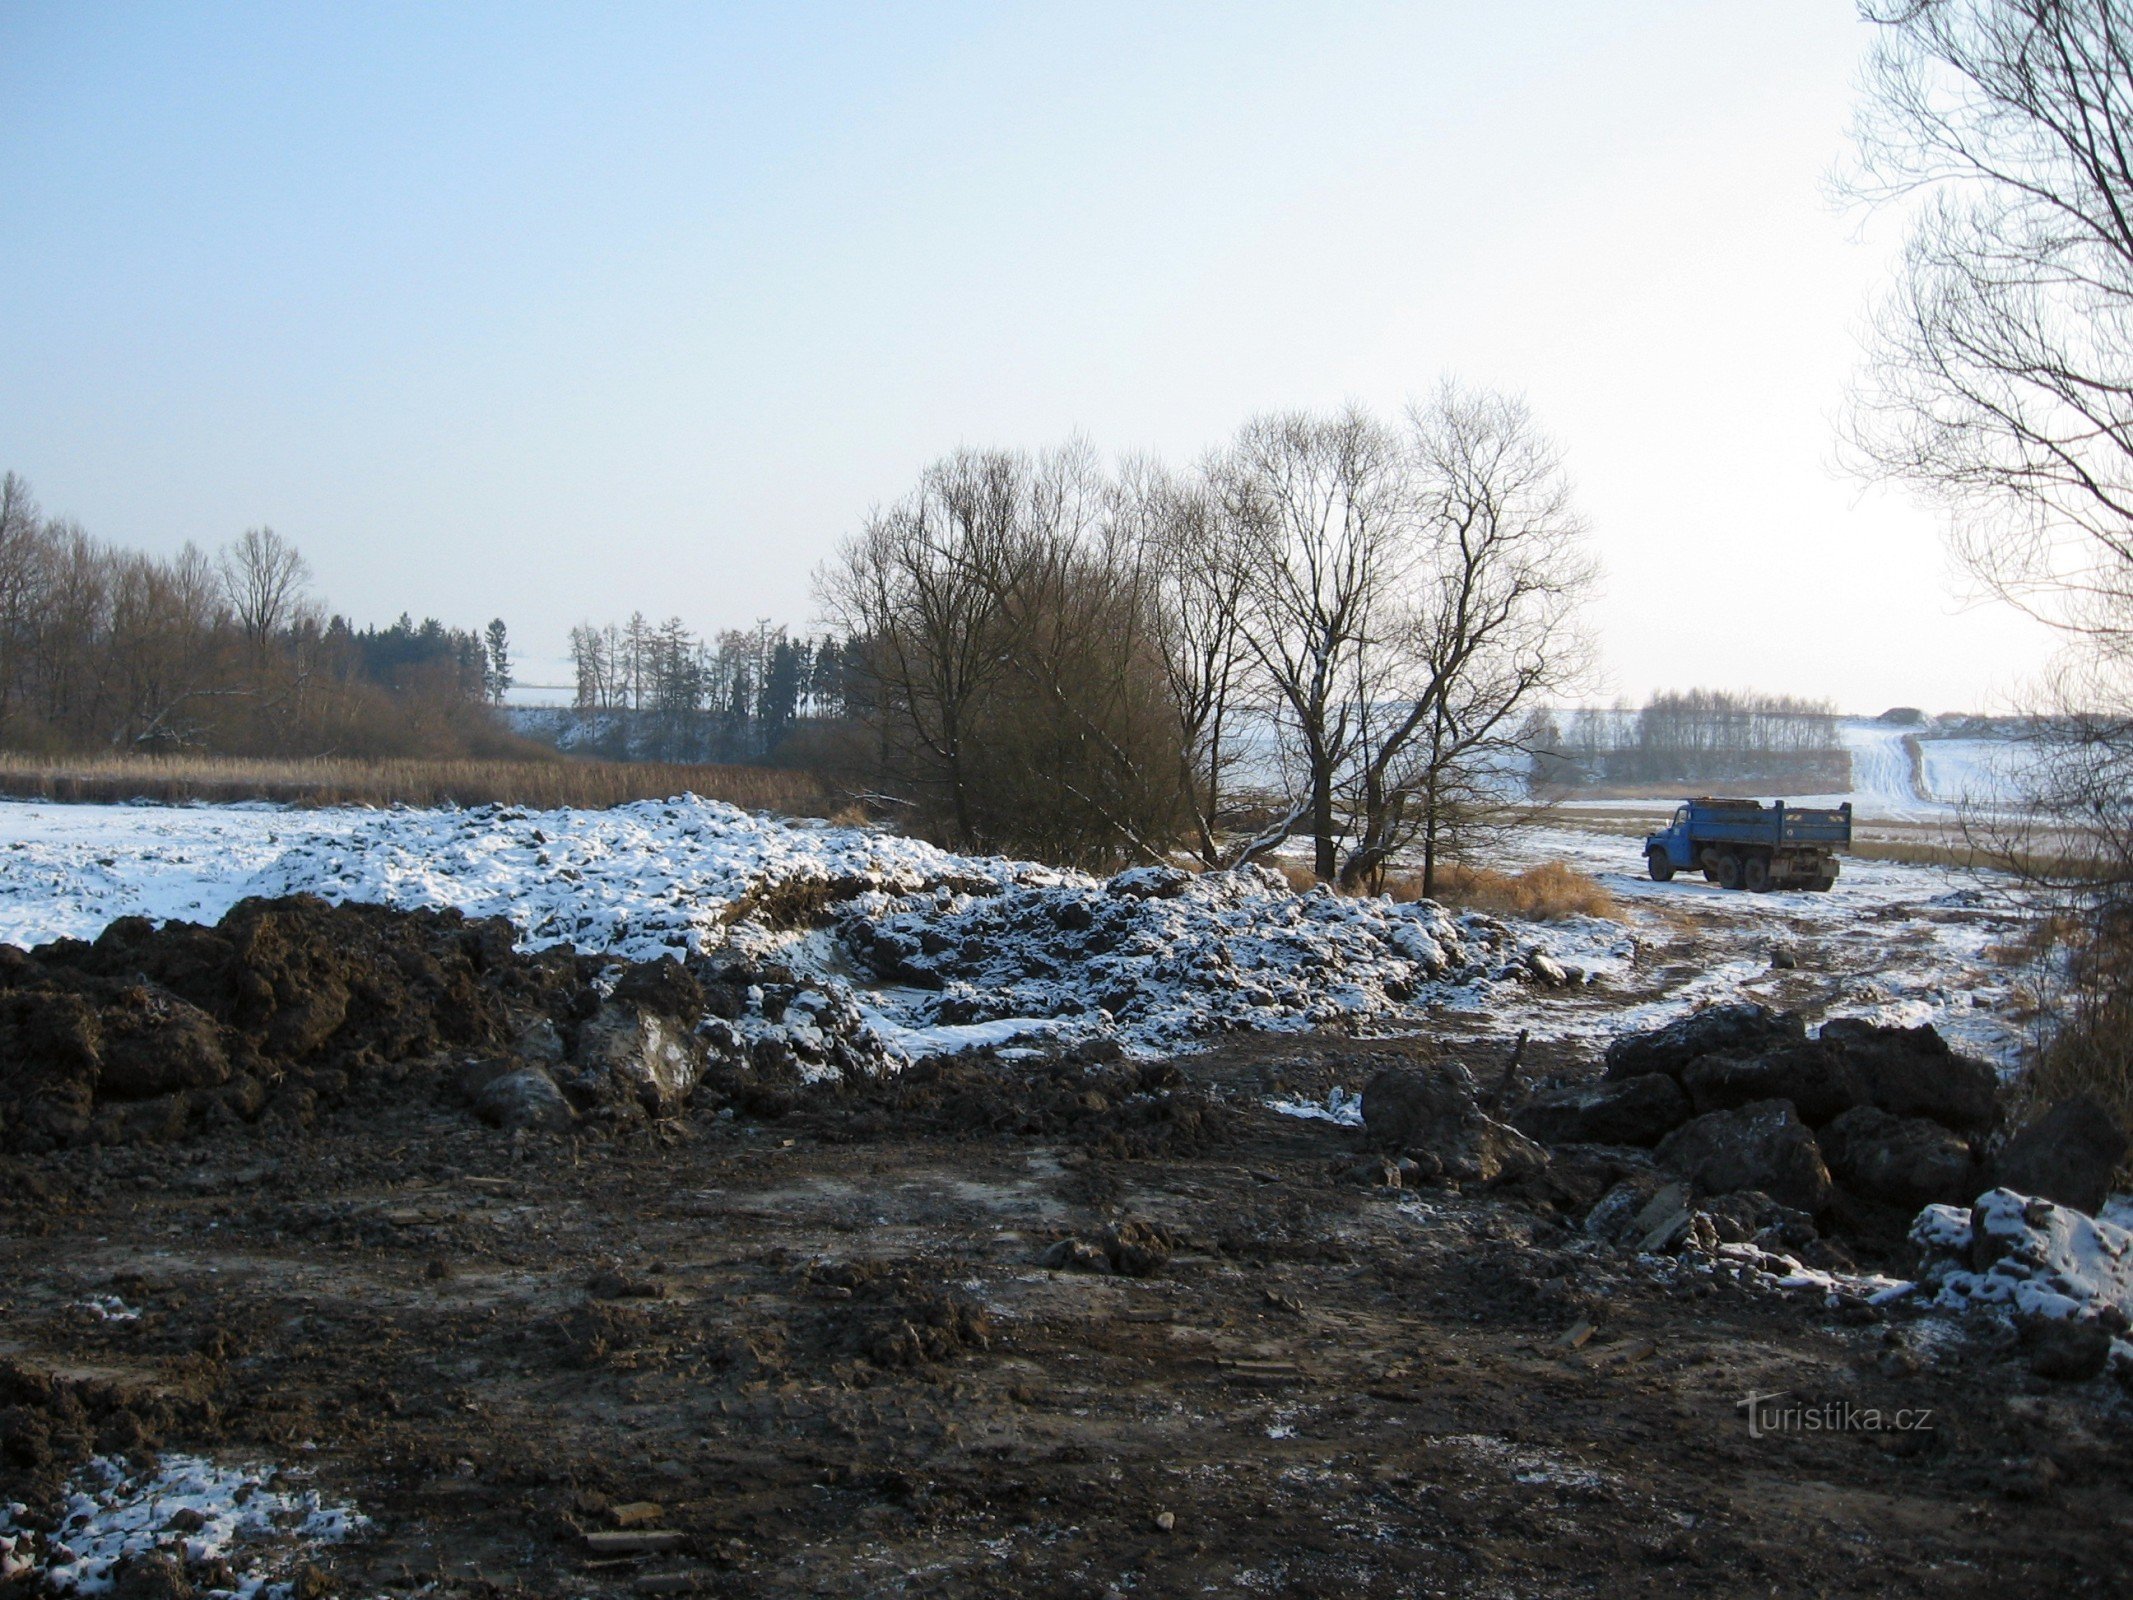 revitalisering af Dolejší rybník - februar 2012